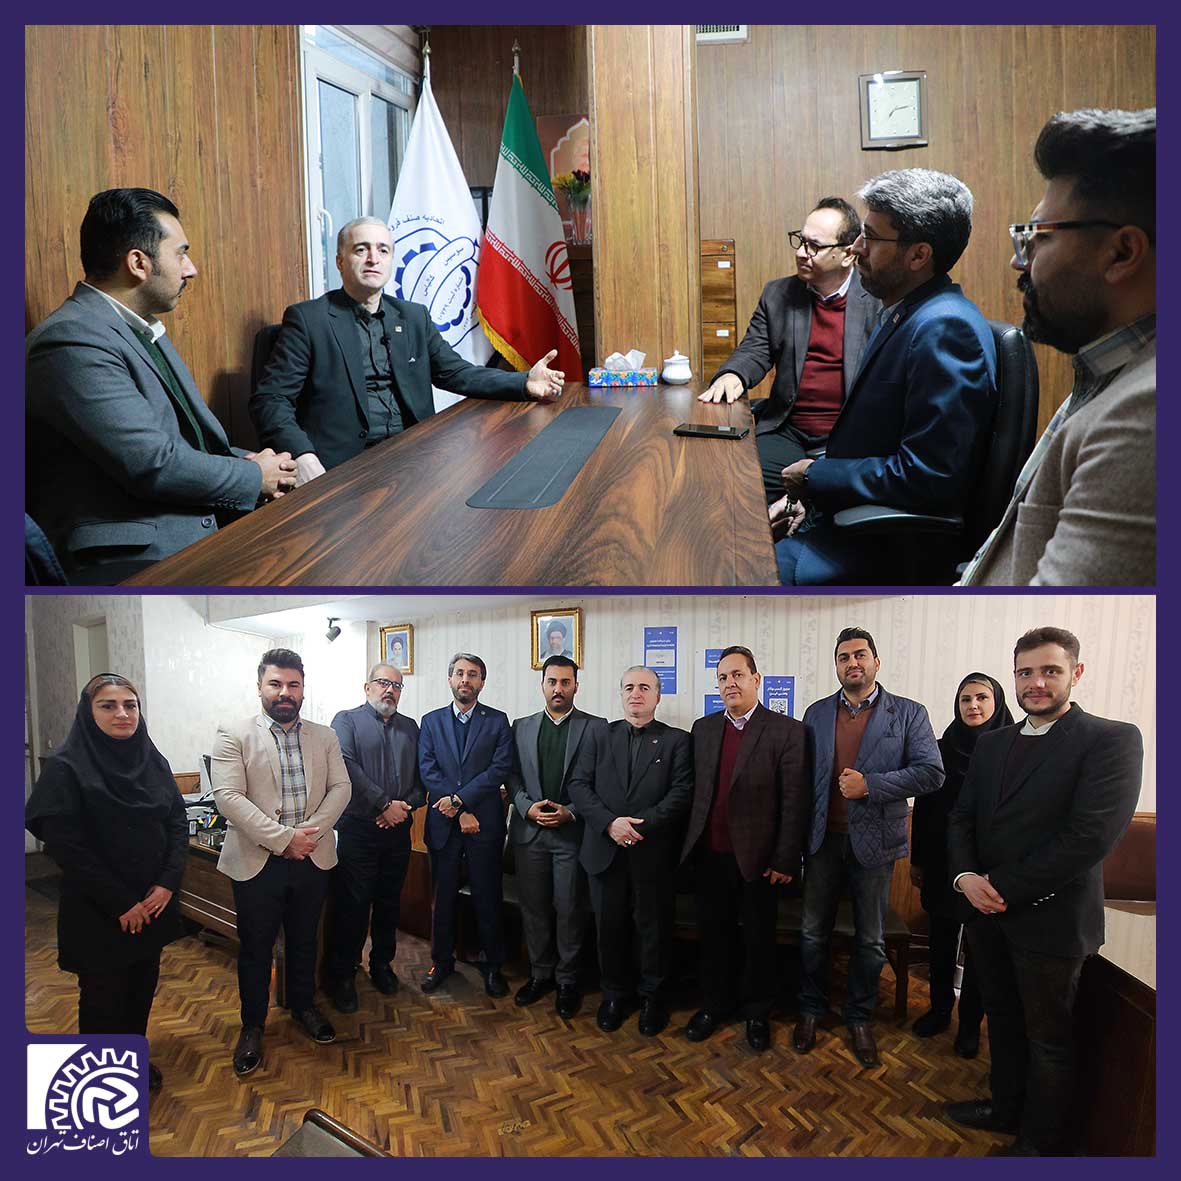 رئیس اتاق اصناف تهران از اتحادیه صنف فروشندگان محصولات گوشتی (همبرگر، سوسیس، کالباس) تهران دیدار کرد